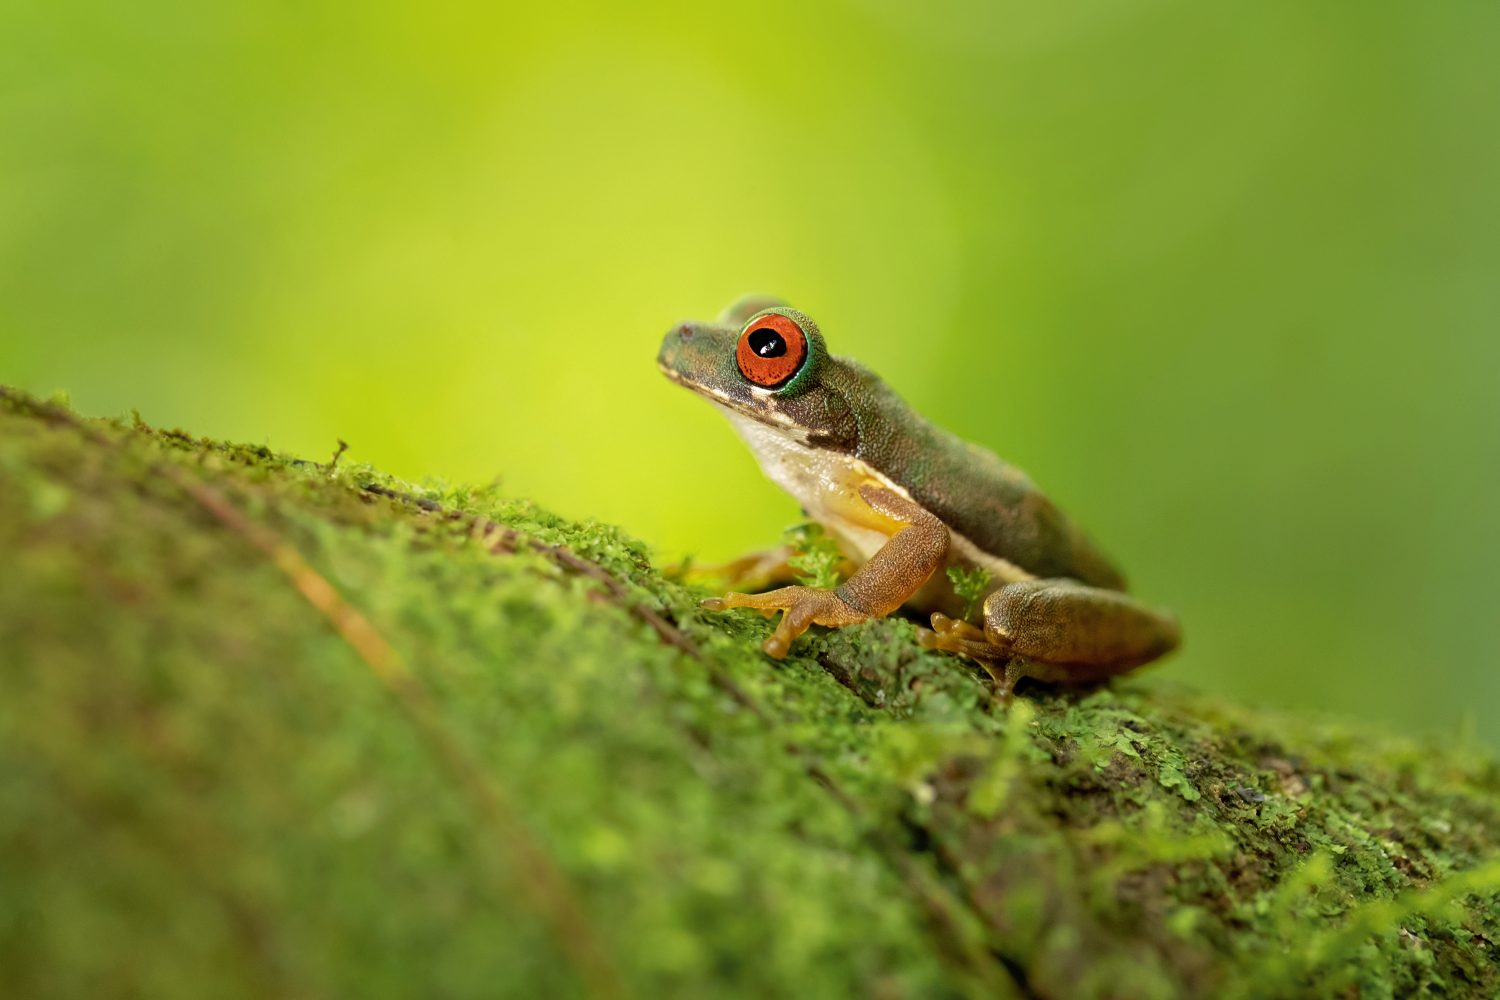 La rana di ruscello dagli occhi rossi o la rana di ruscello dagli occhi rossi (Duellmanohyla rufioculis), è una specie di rana della famiglia Hylidae.